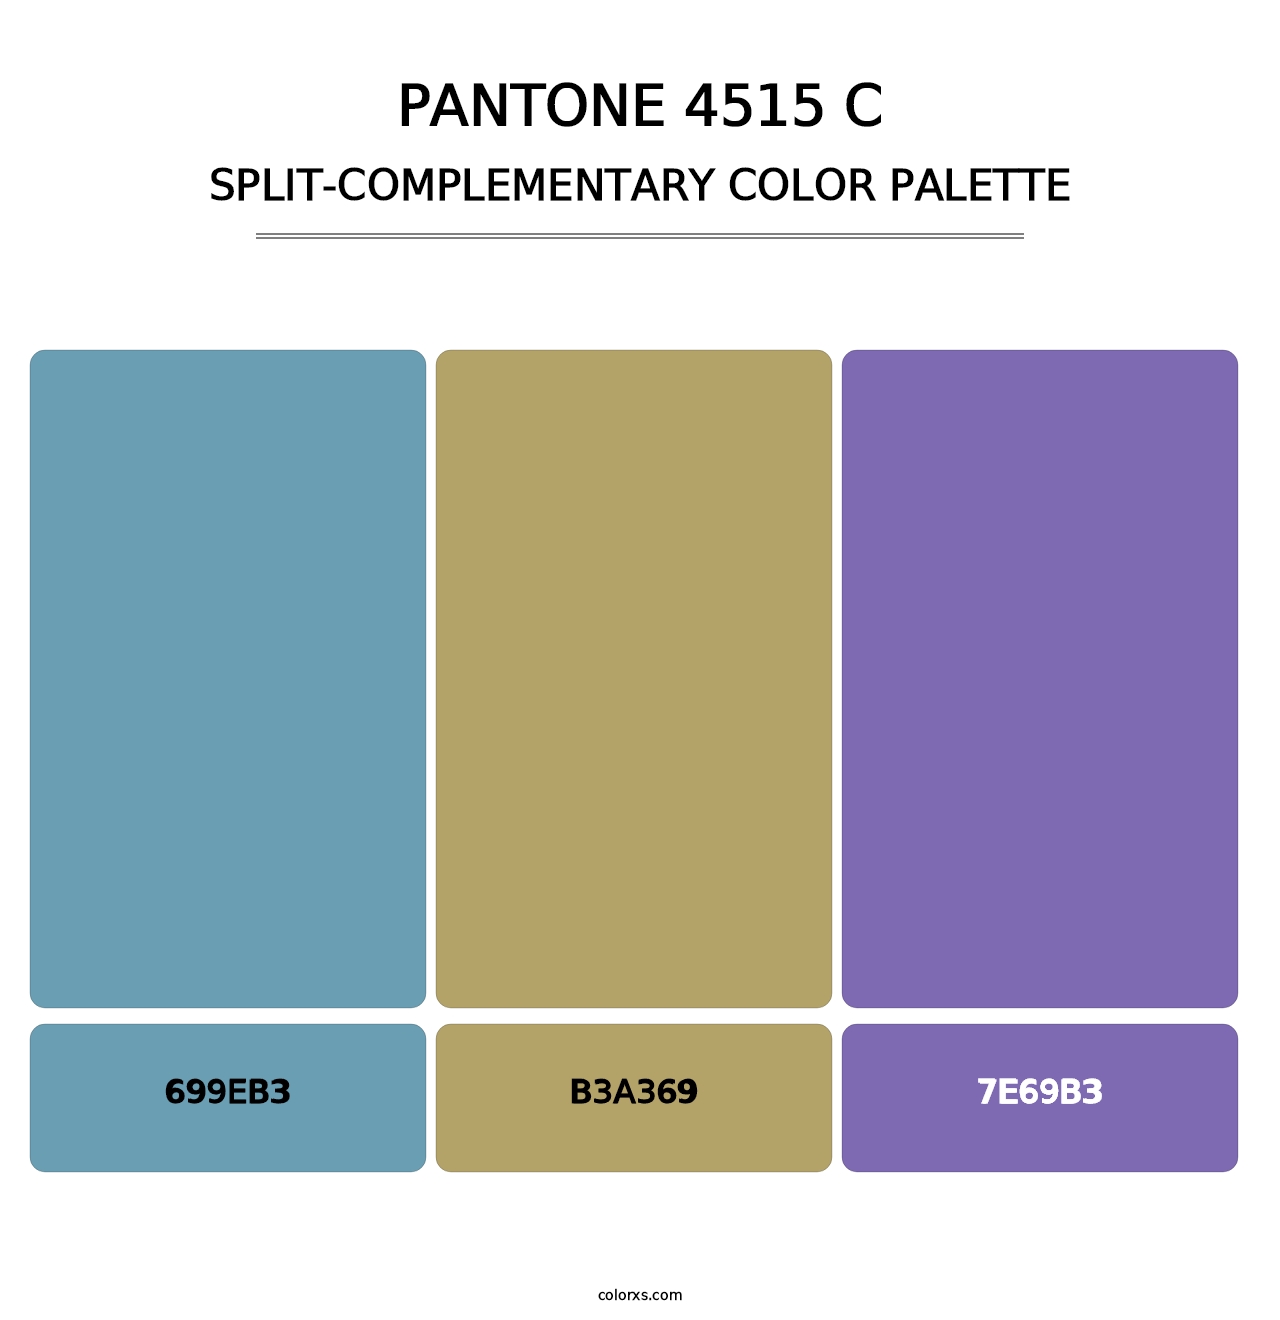 PANTONE 4515 C - Split-Complementary Color Palette